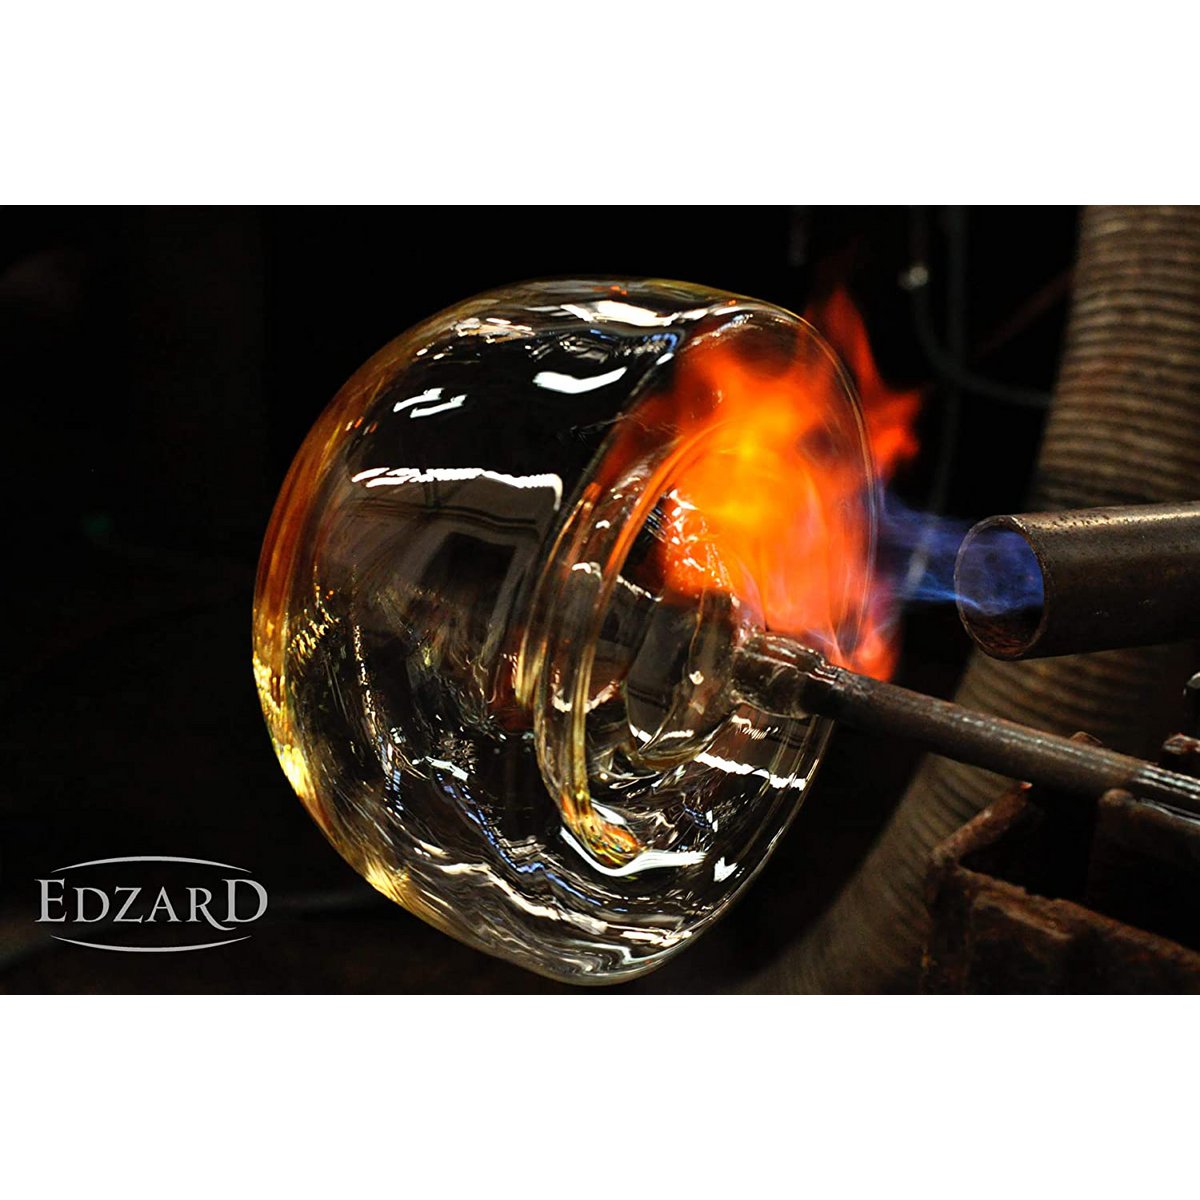 EDZARD Windlicht Molly, mundgeblasenes Kristallglas mit Platinrand, Höhe 18 cm, Durchmesser 18 cm